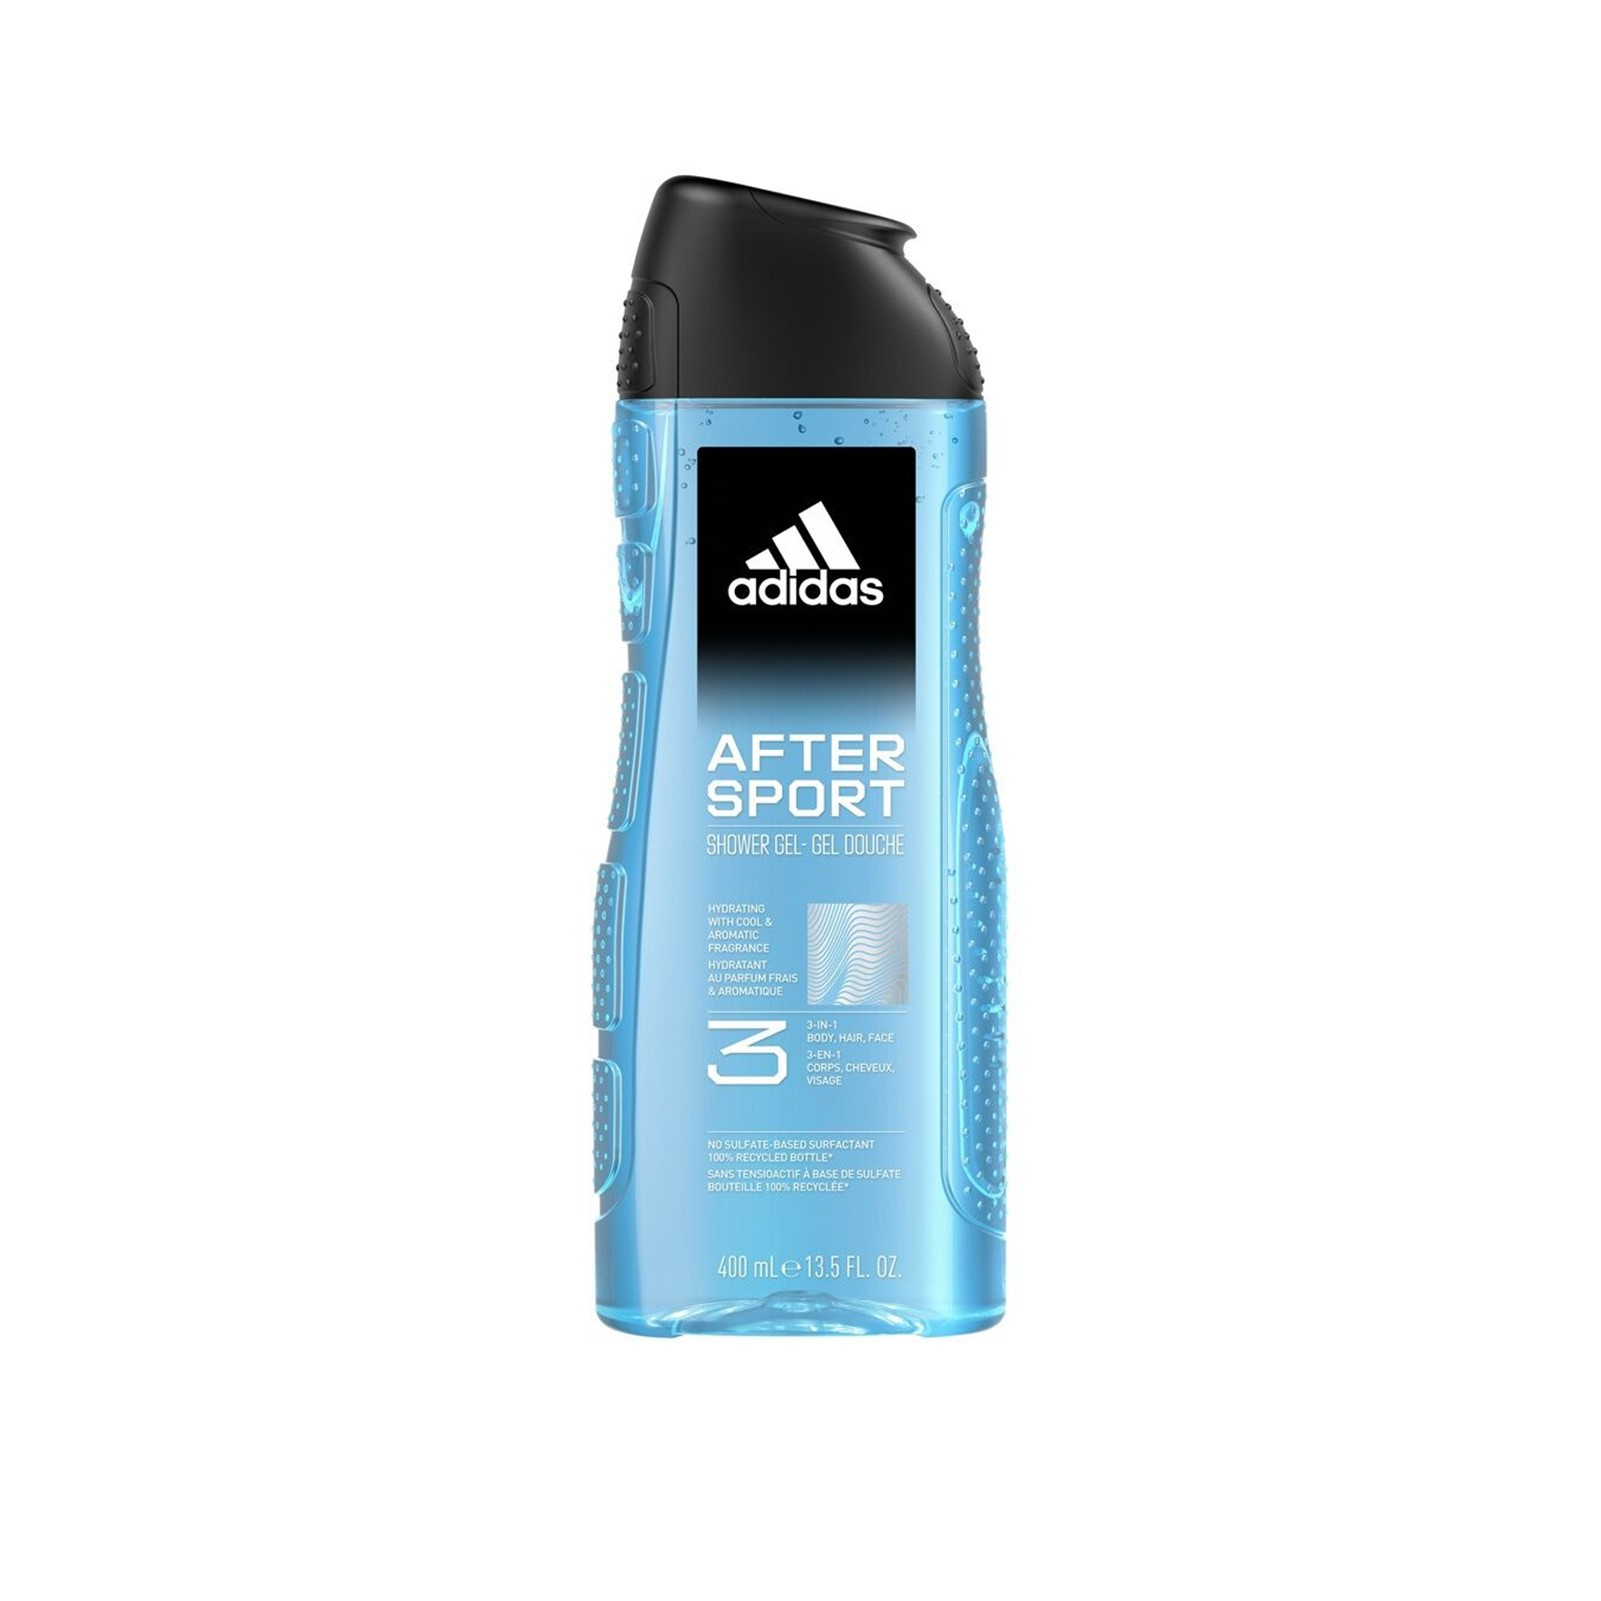 Buy adidas After Sport Hydrating 3-In-1 Shower Gel 400ml (13.53fl